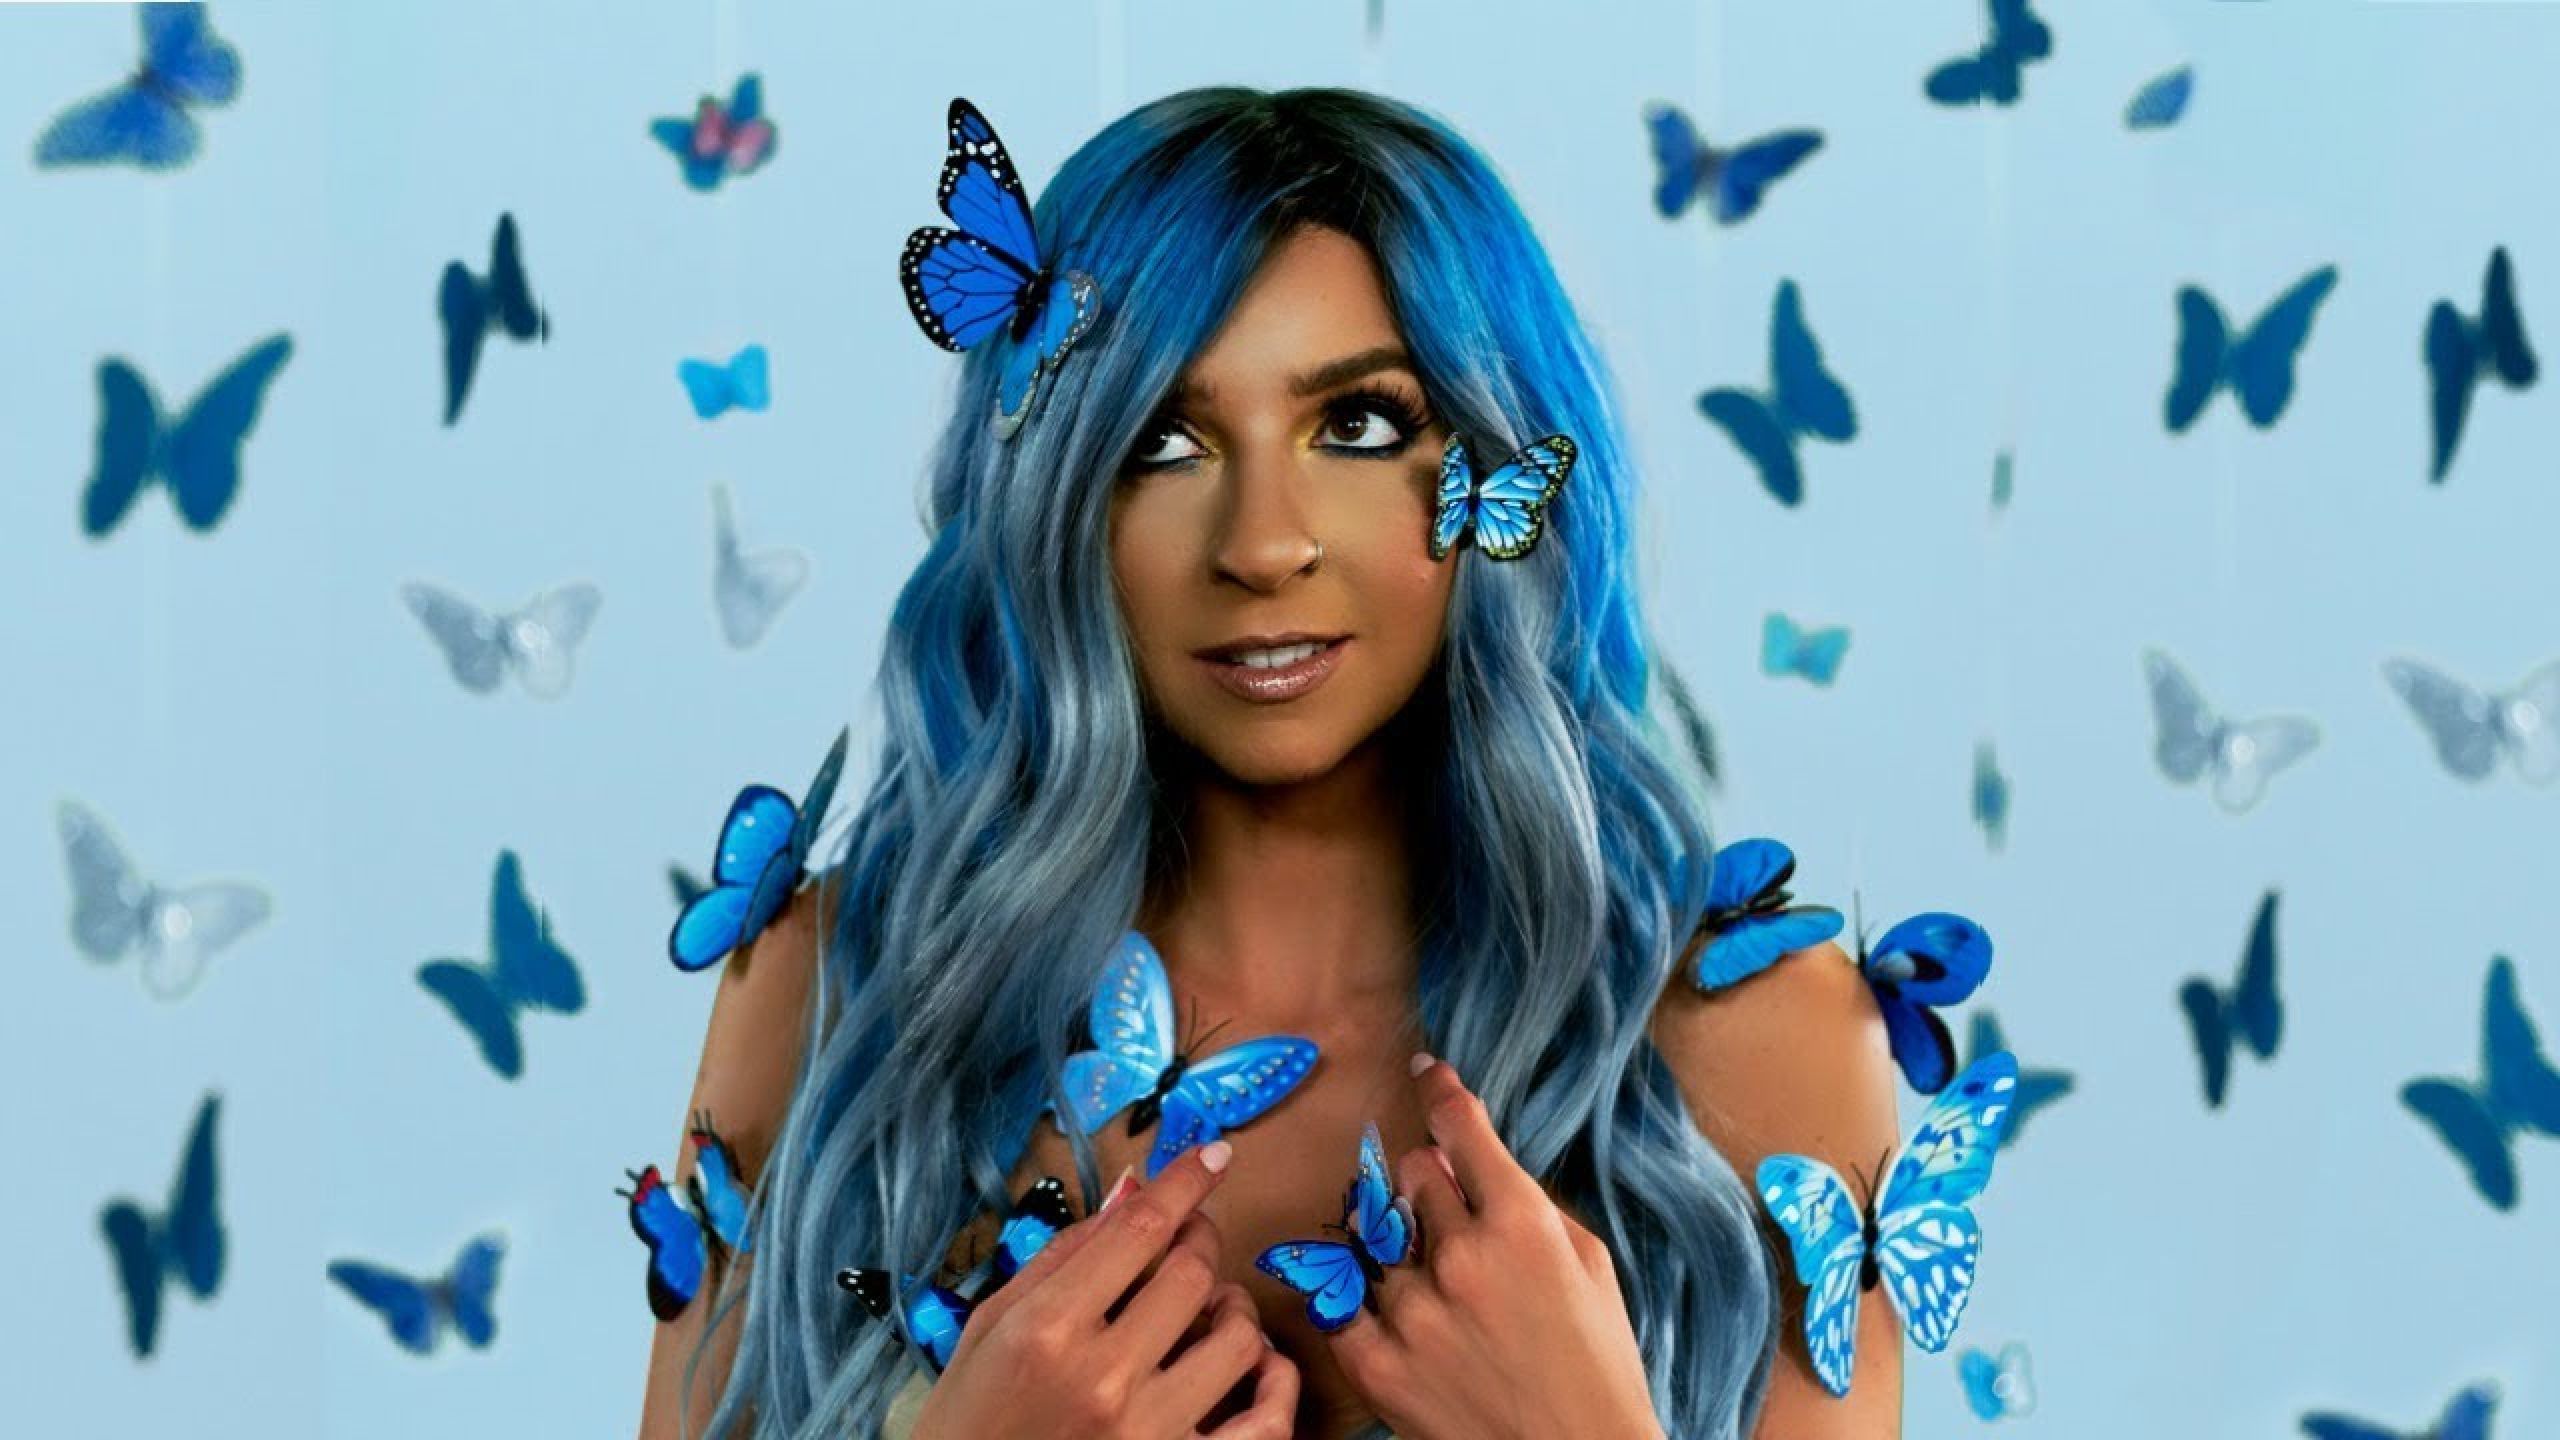 Butterflies gabbie hanna lyrics